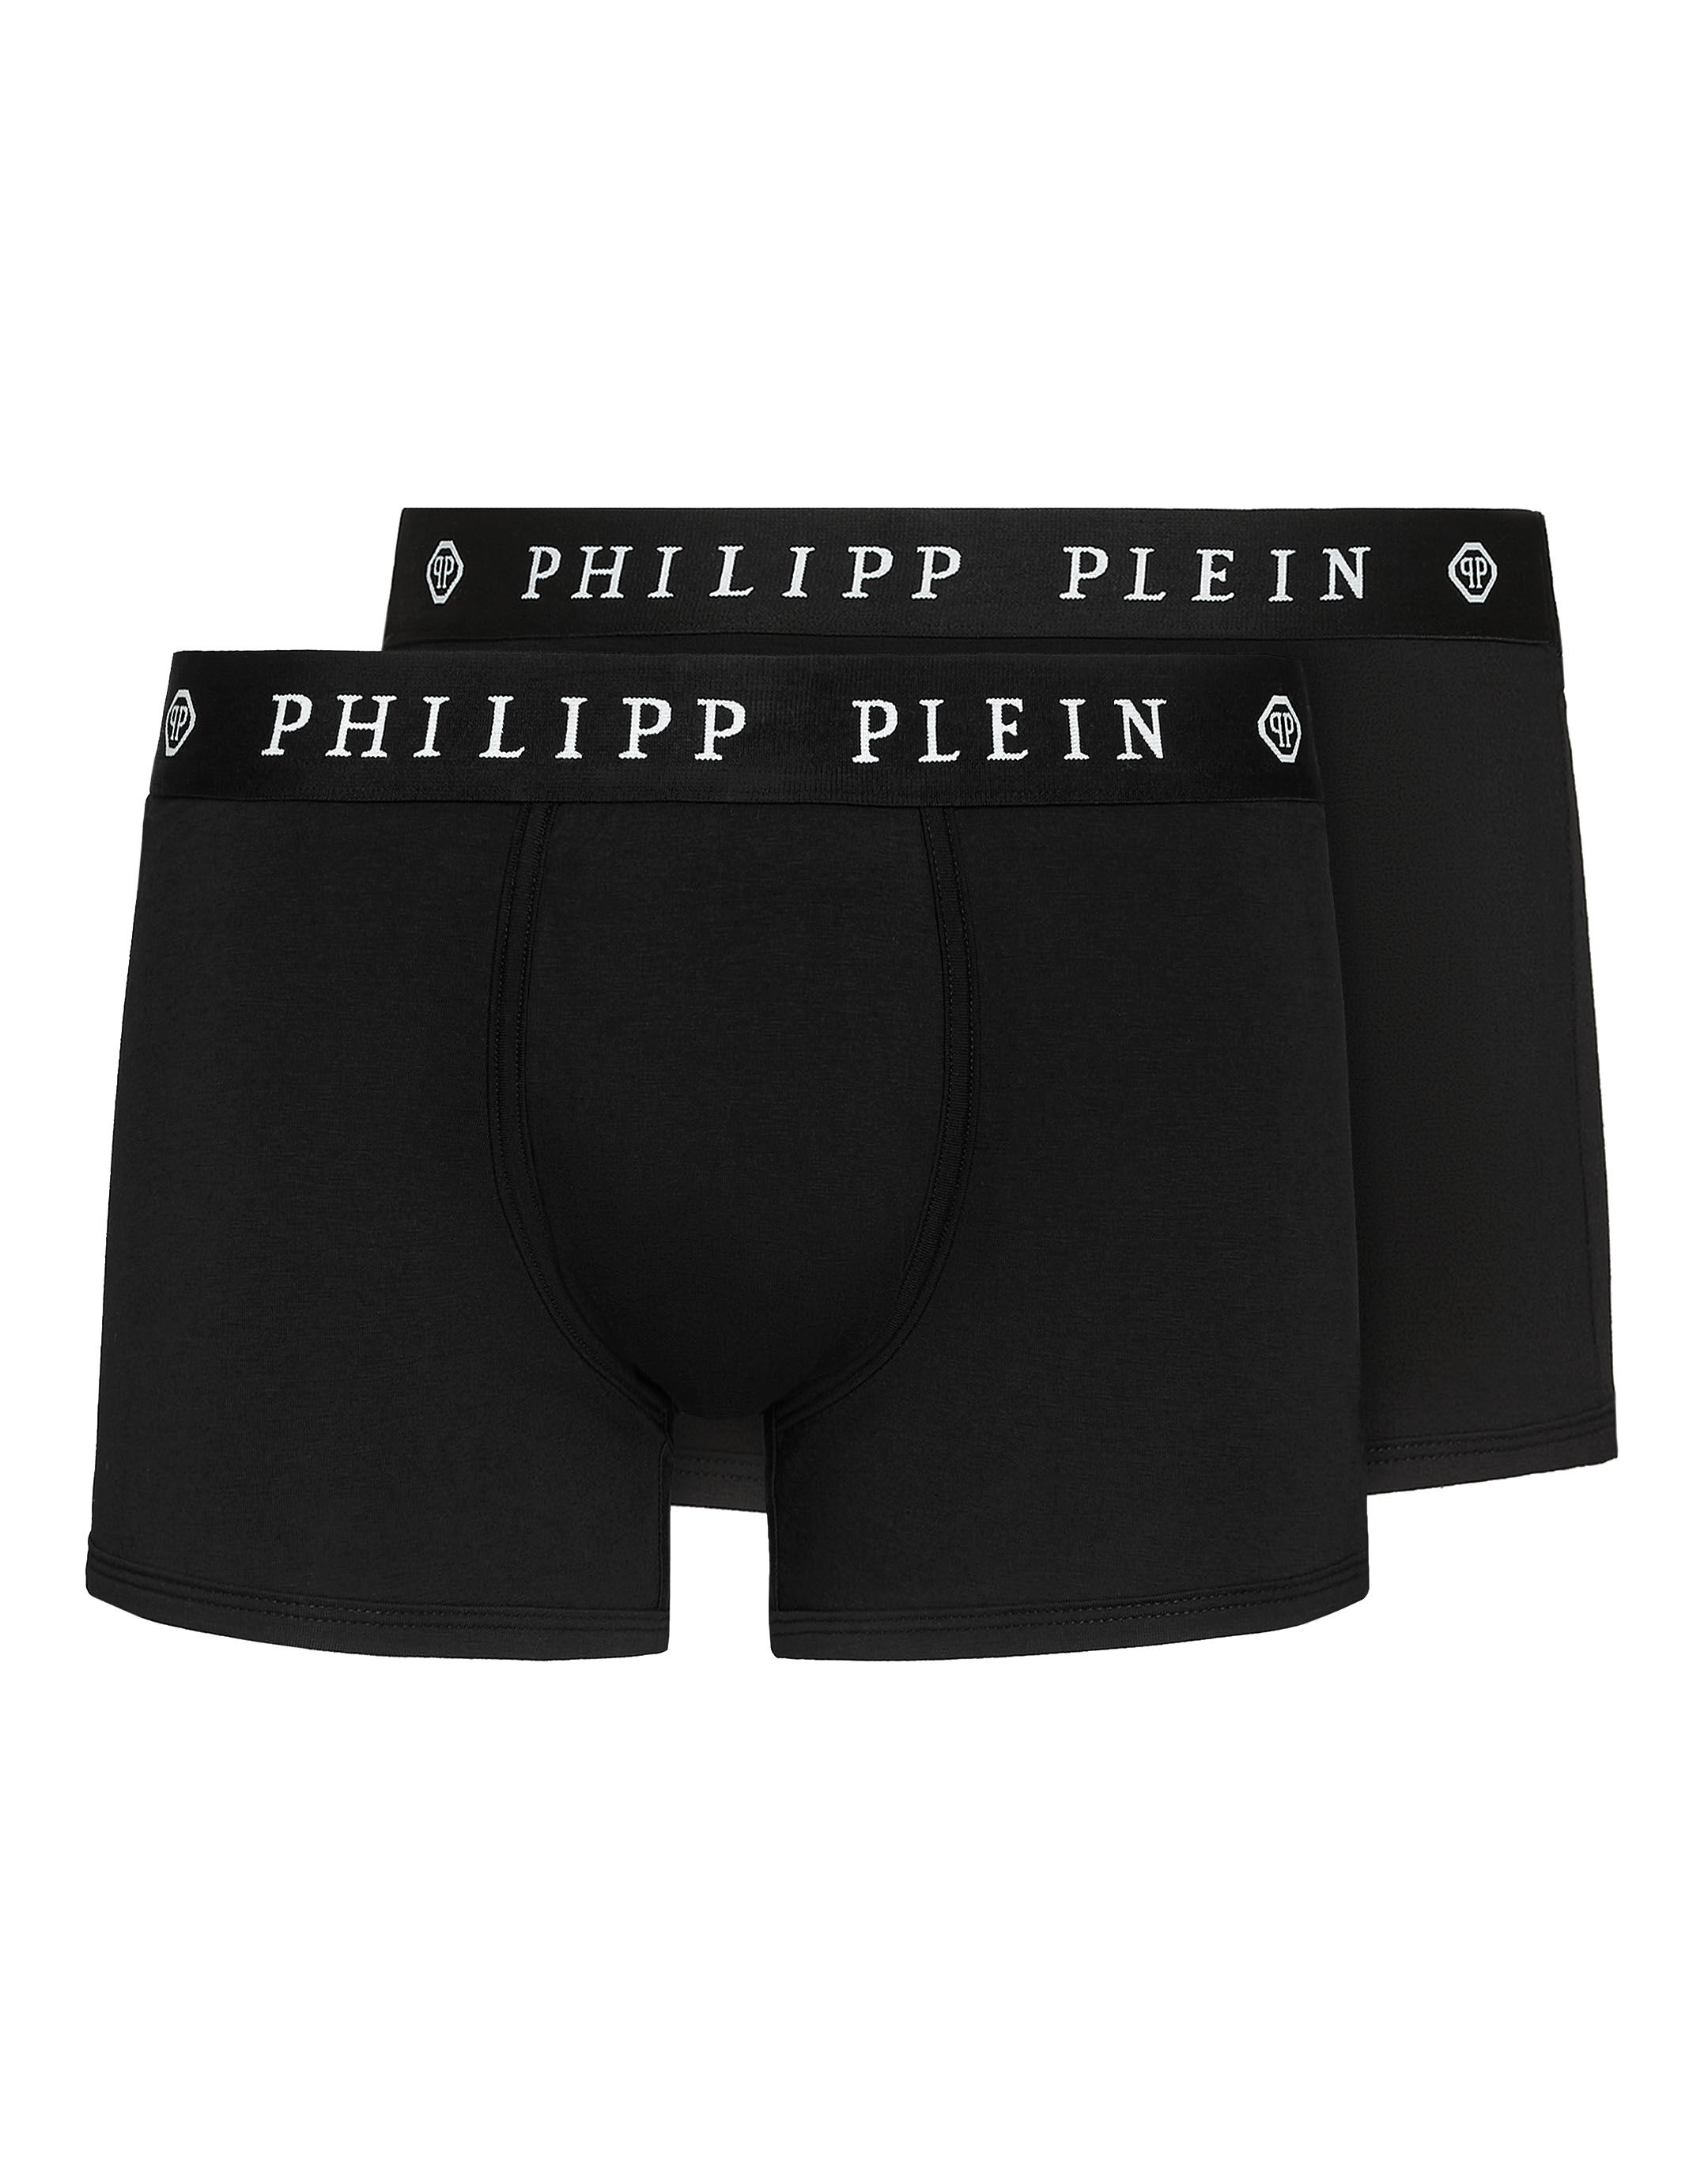 Men's Underwear | Philipp Plein